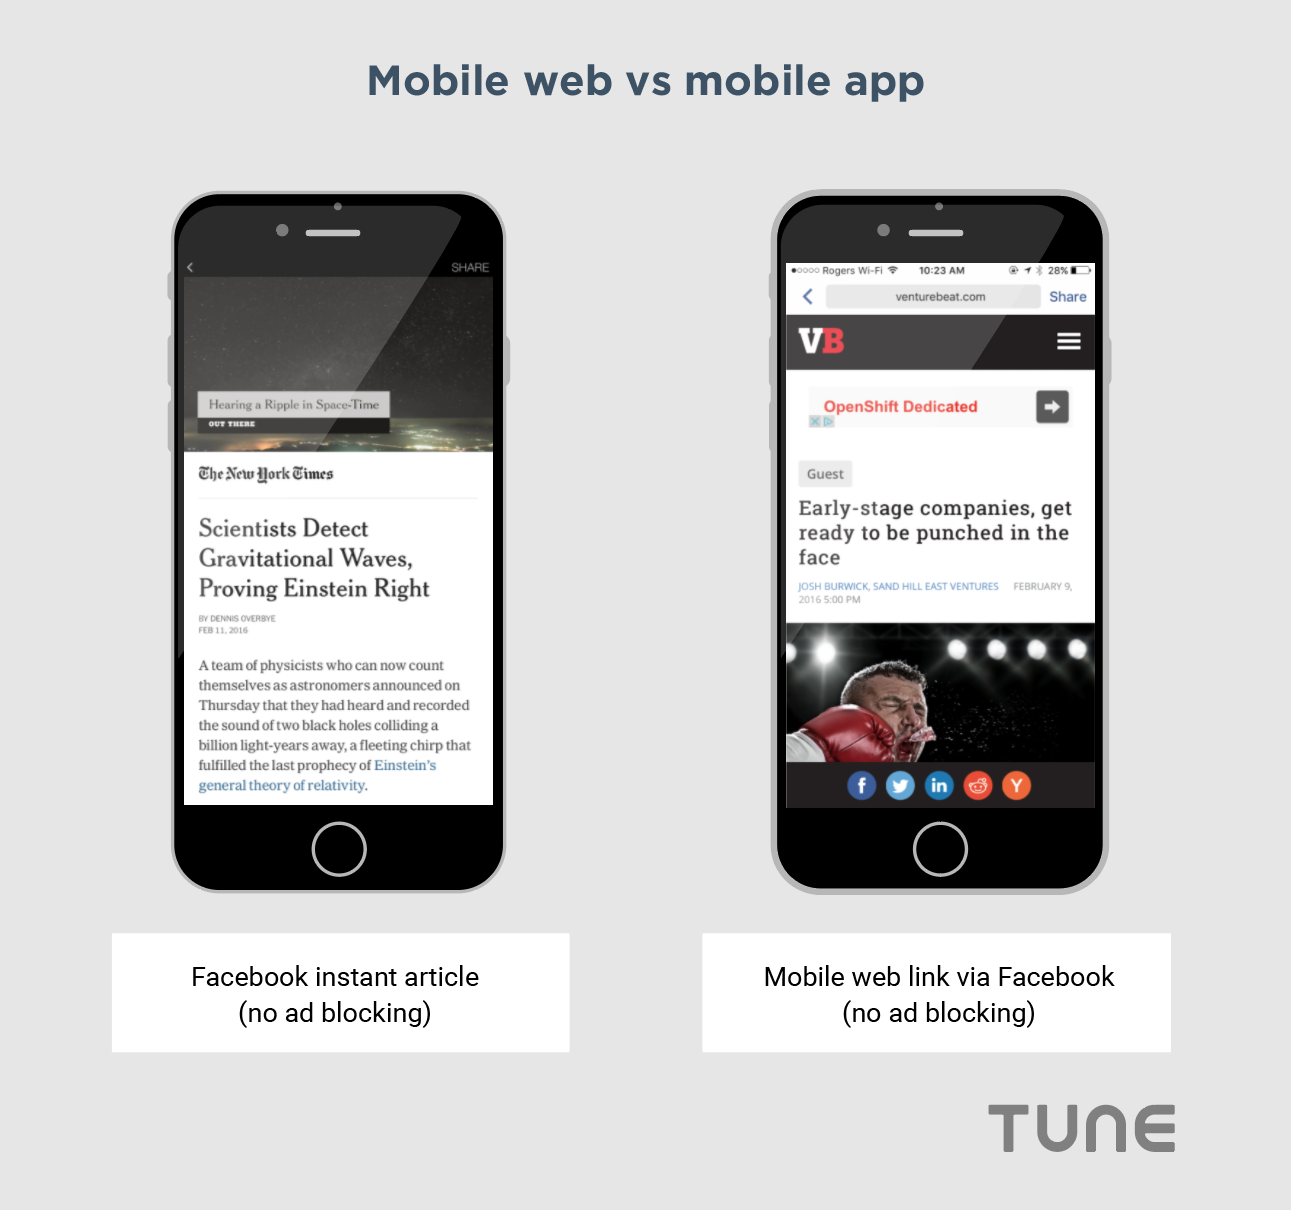 Mobile web vs mobile app